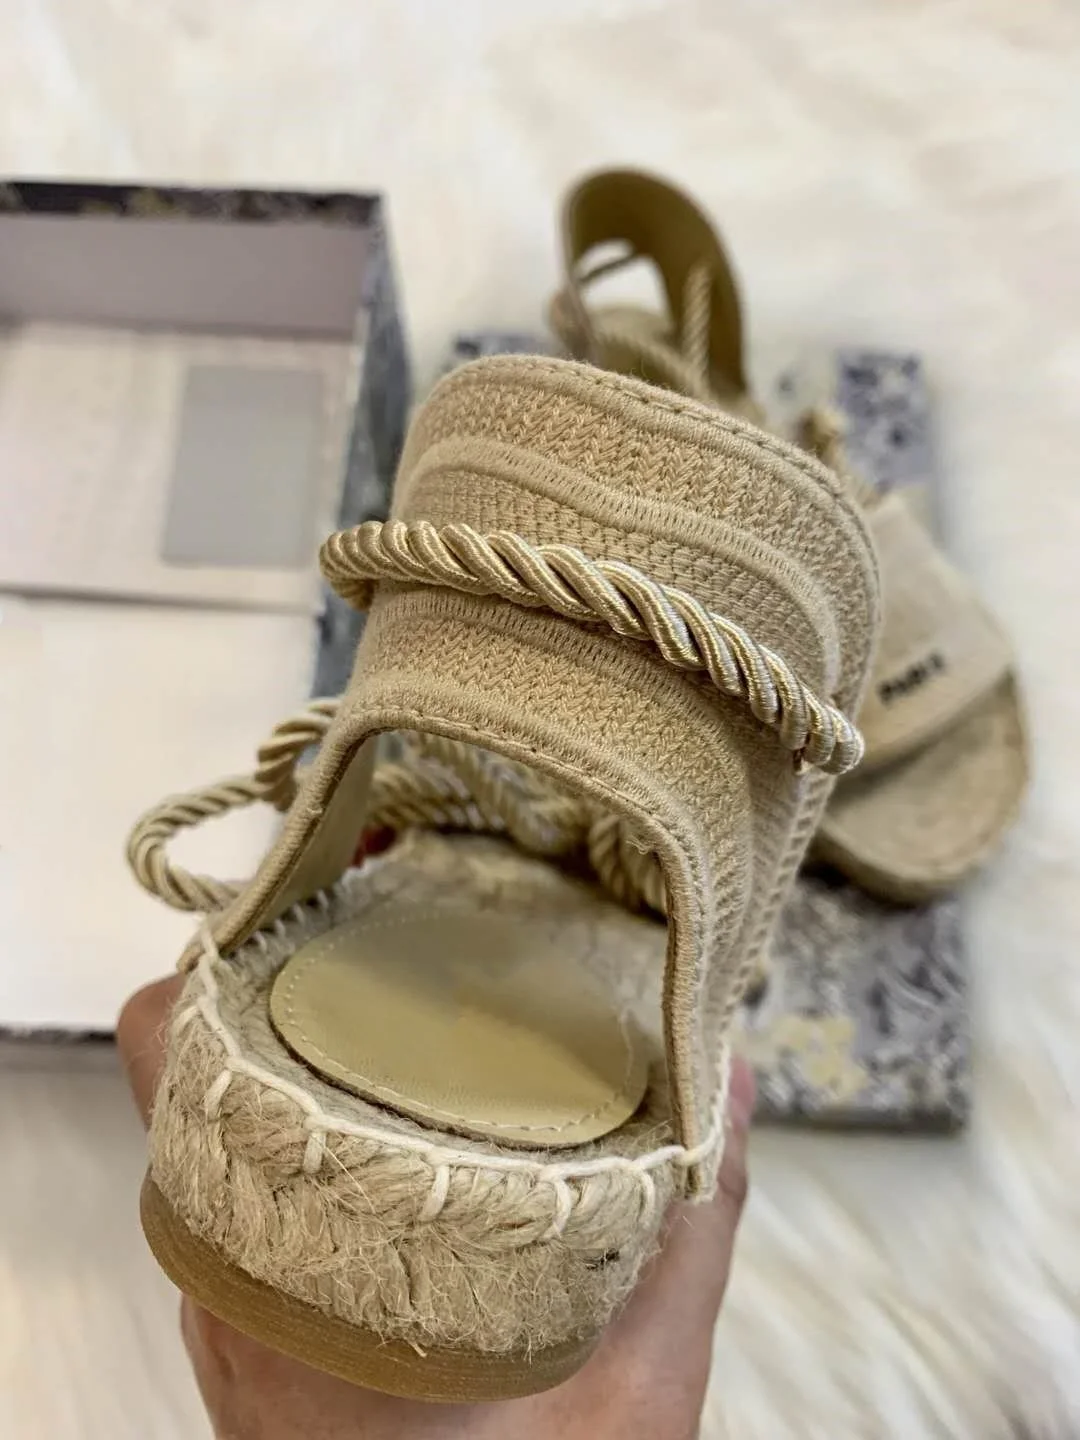 2020 Lastest Platform sandals women designer shoes , Fashion Wide Flat espadrille Summer Outdoor Causal rope ankle strap Sandals enlarge